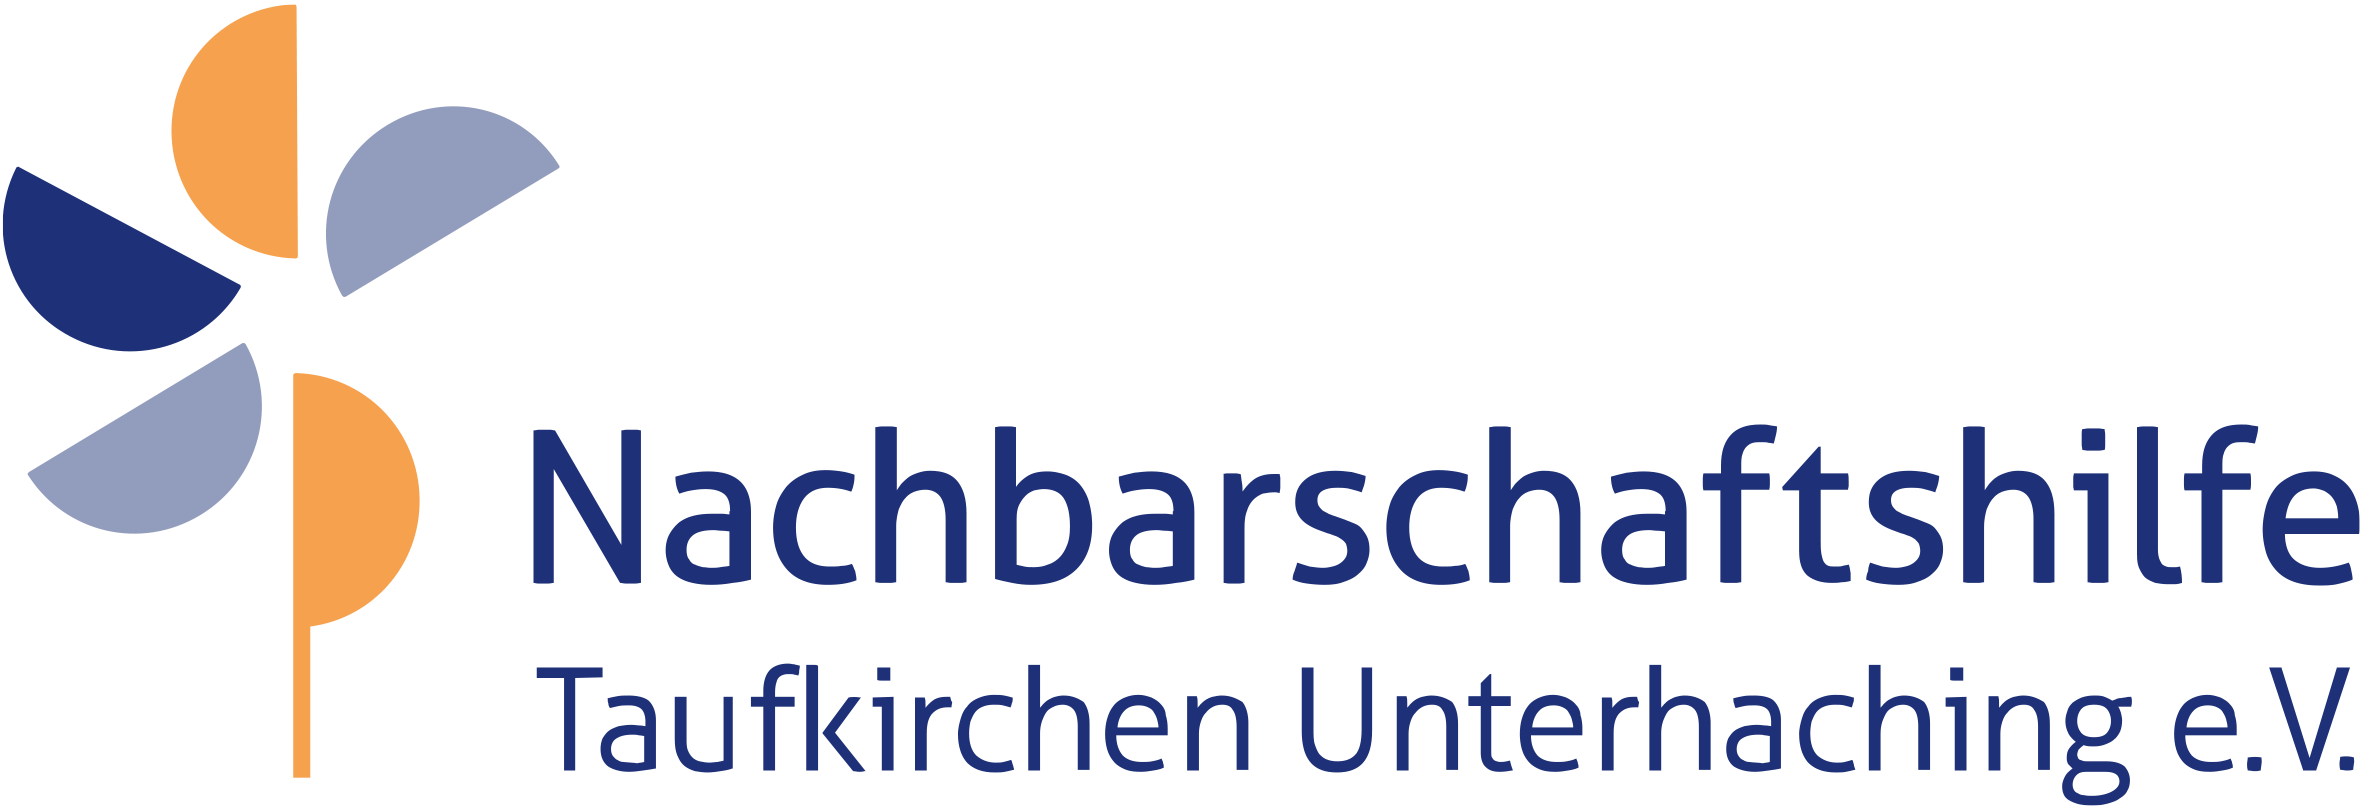 Nachbarschaftshilfe Taufkirchen Unterhaching - Stiftung